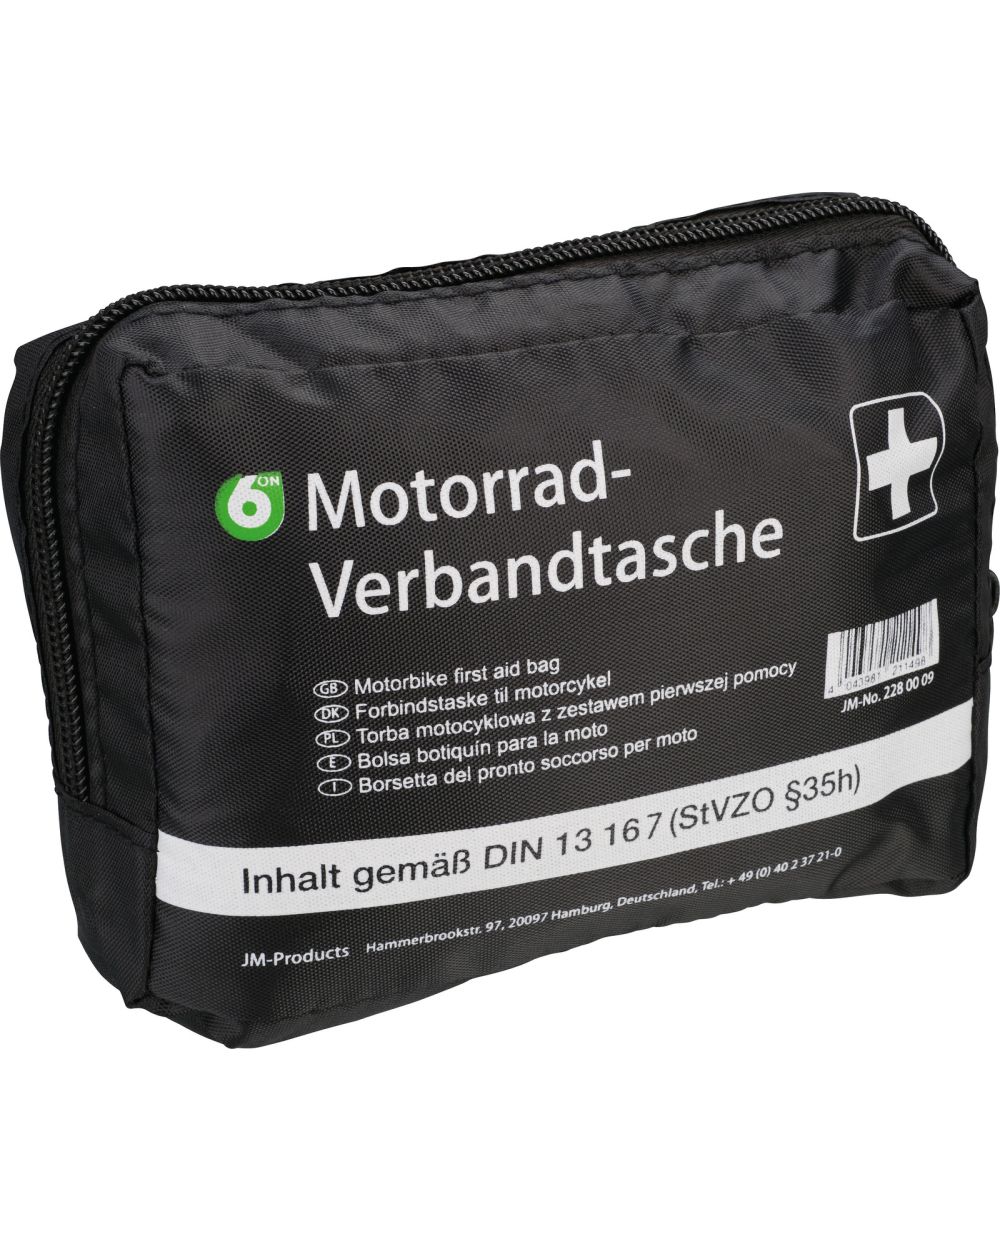 Erste Hilfe Motorrad Verbandtasche, Maße ca. 160 x 115 x 60mm, Inhalt nach  DIN 13 167 (StVZO § 35 h), sollte immer dabei sein